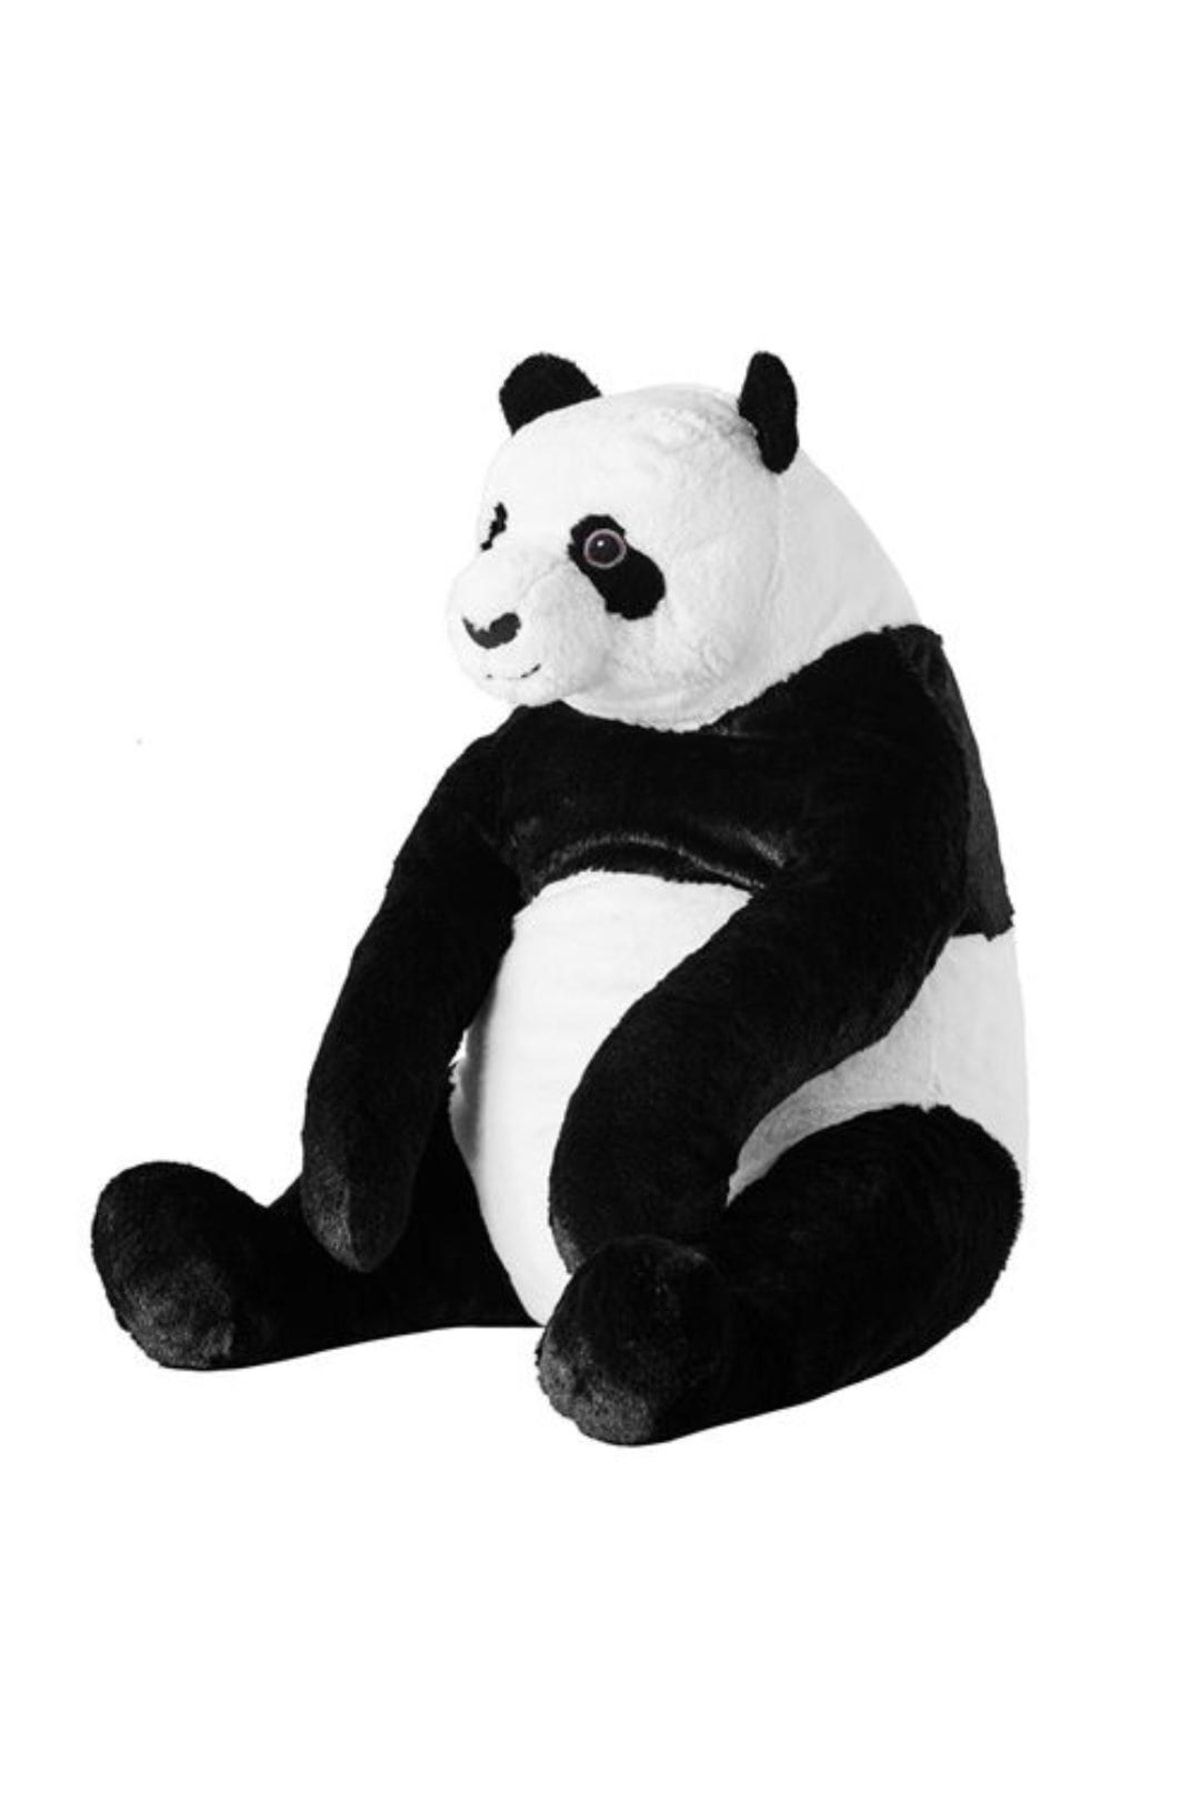 IKEA Panda Yumuşak Oyuncak, Siyah-beyaz